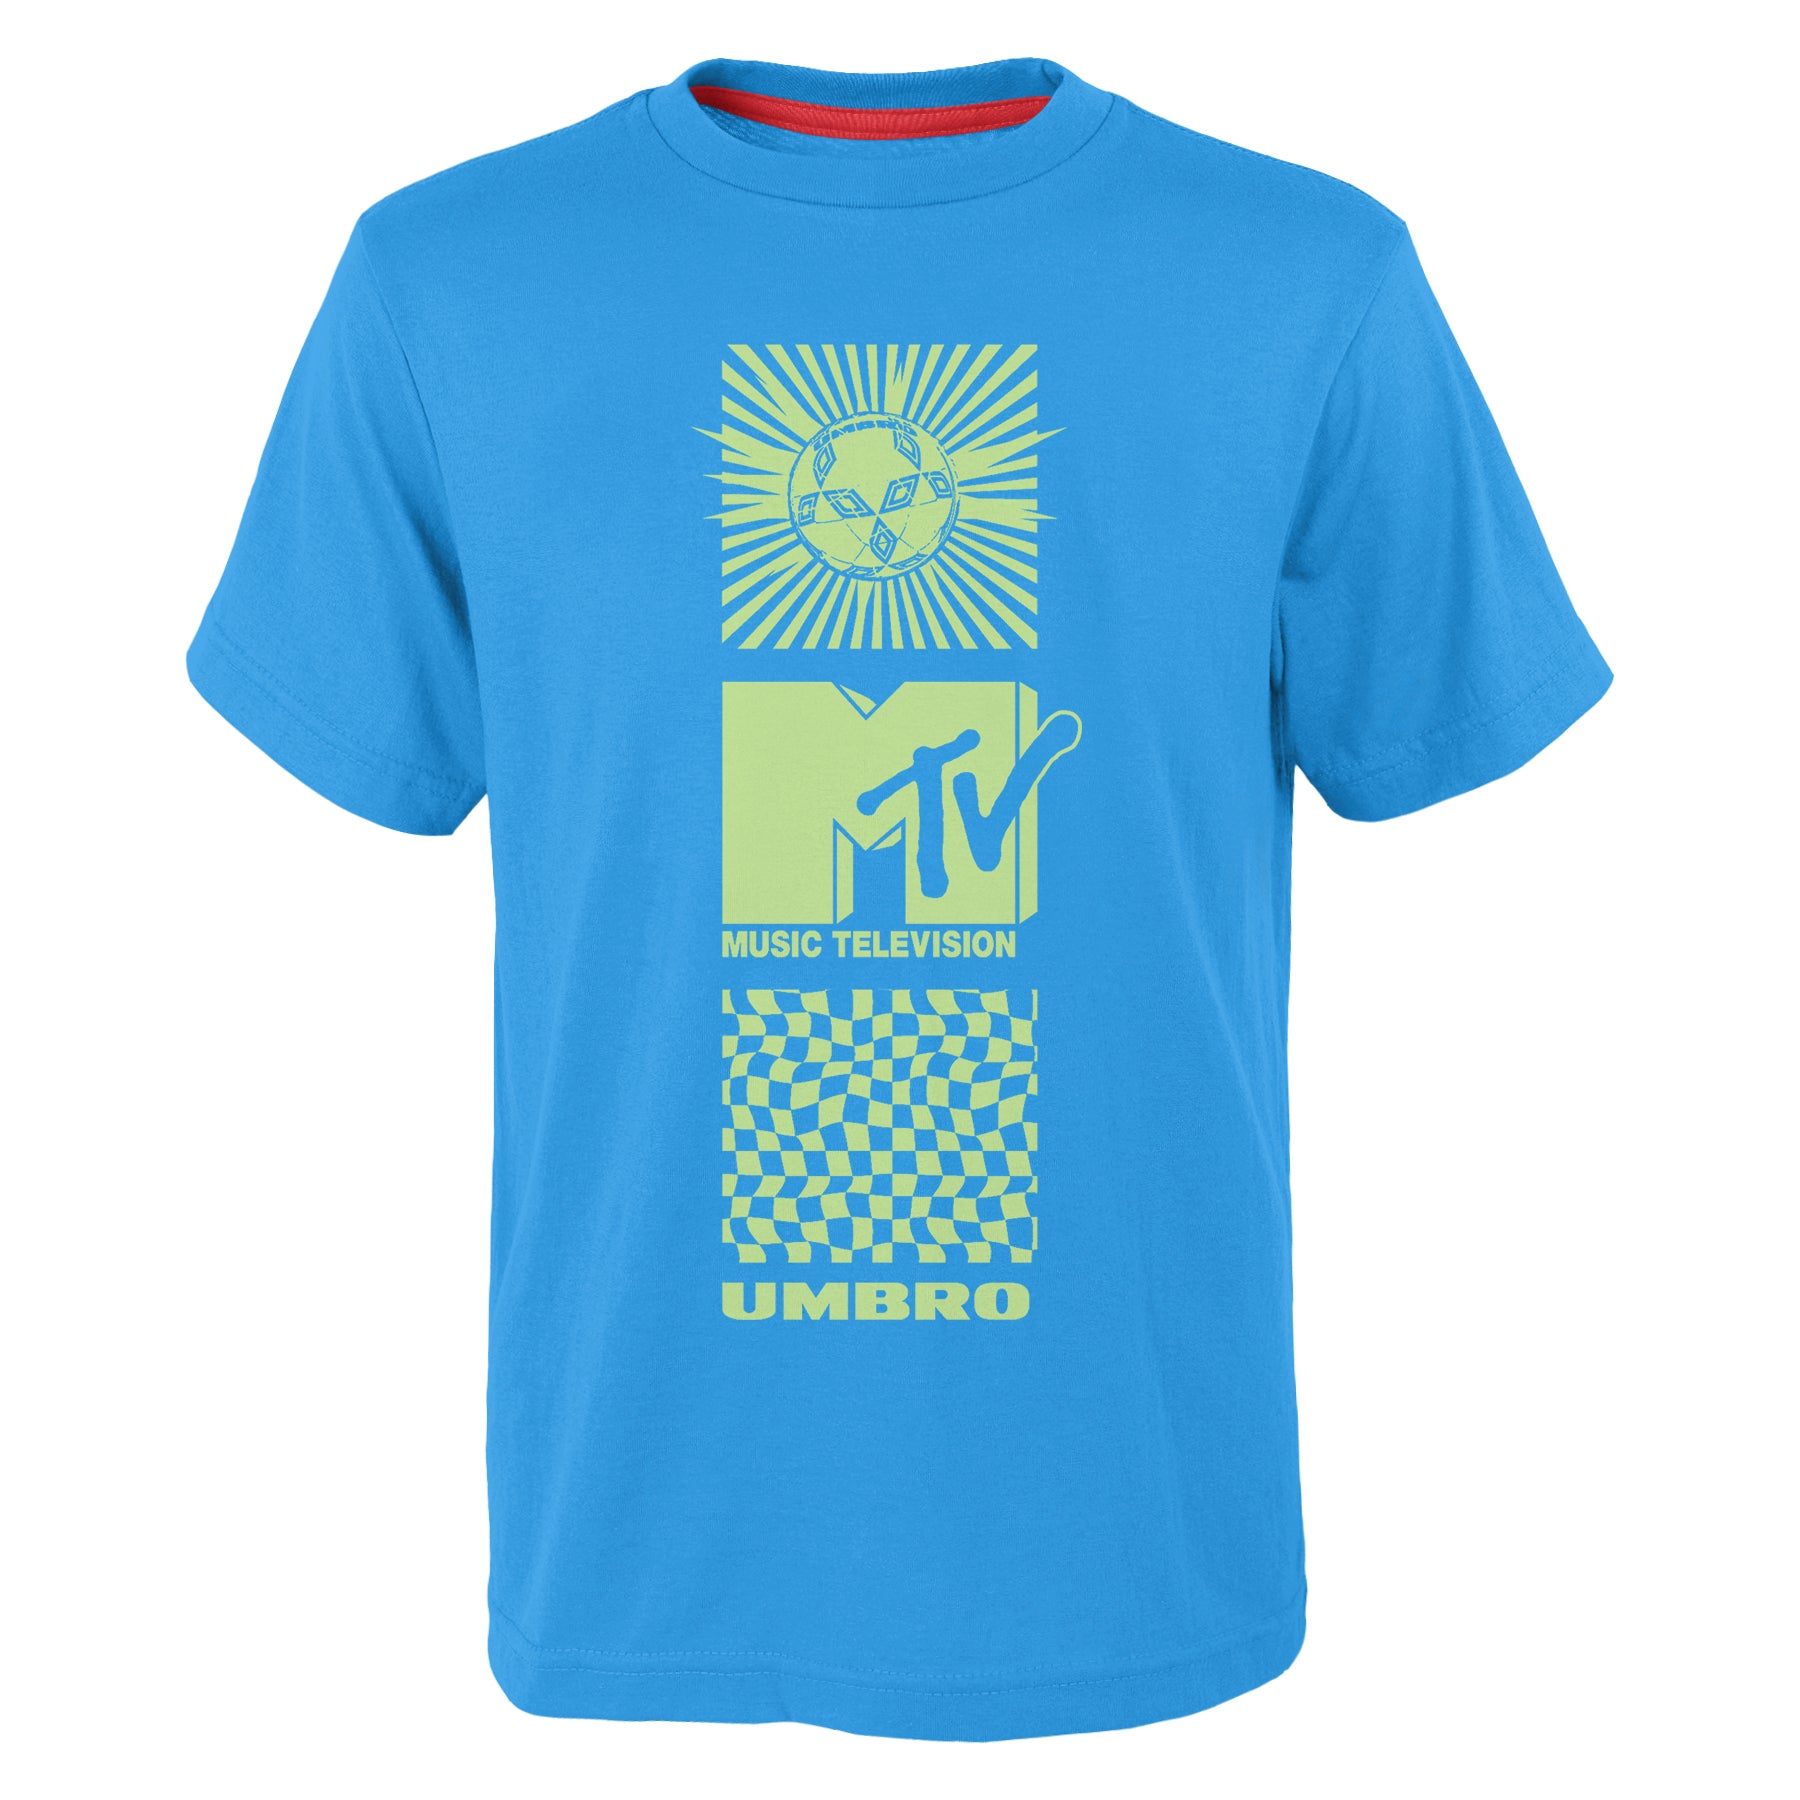 UMBRO x MTV GRAPHIC TEE